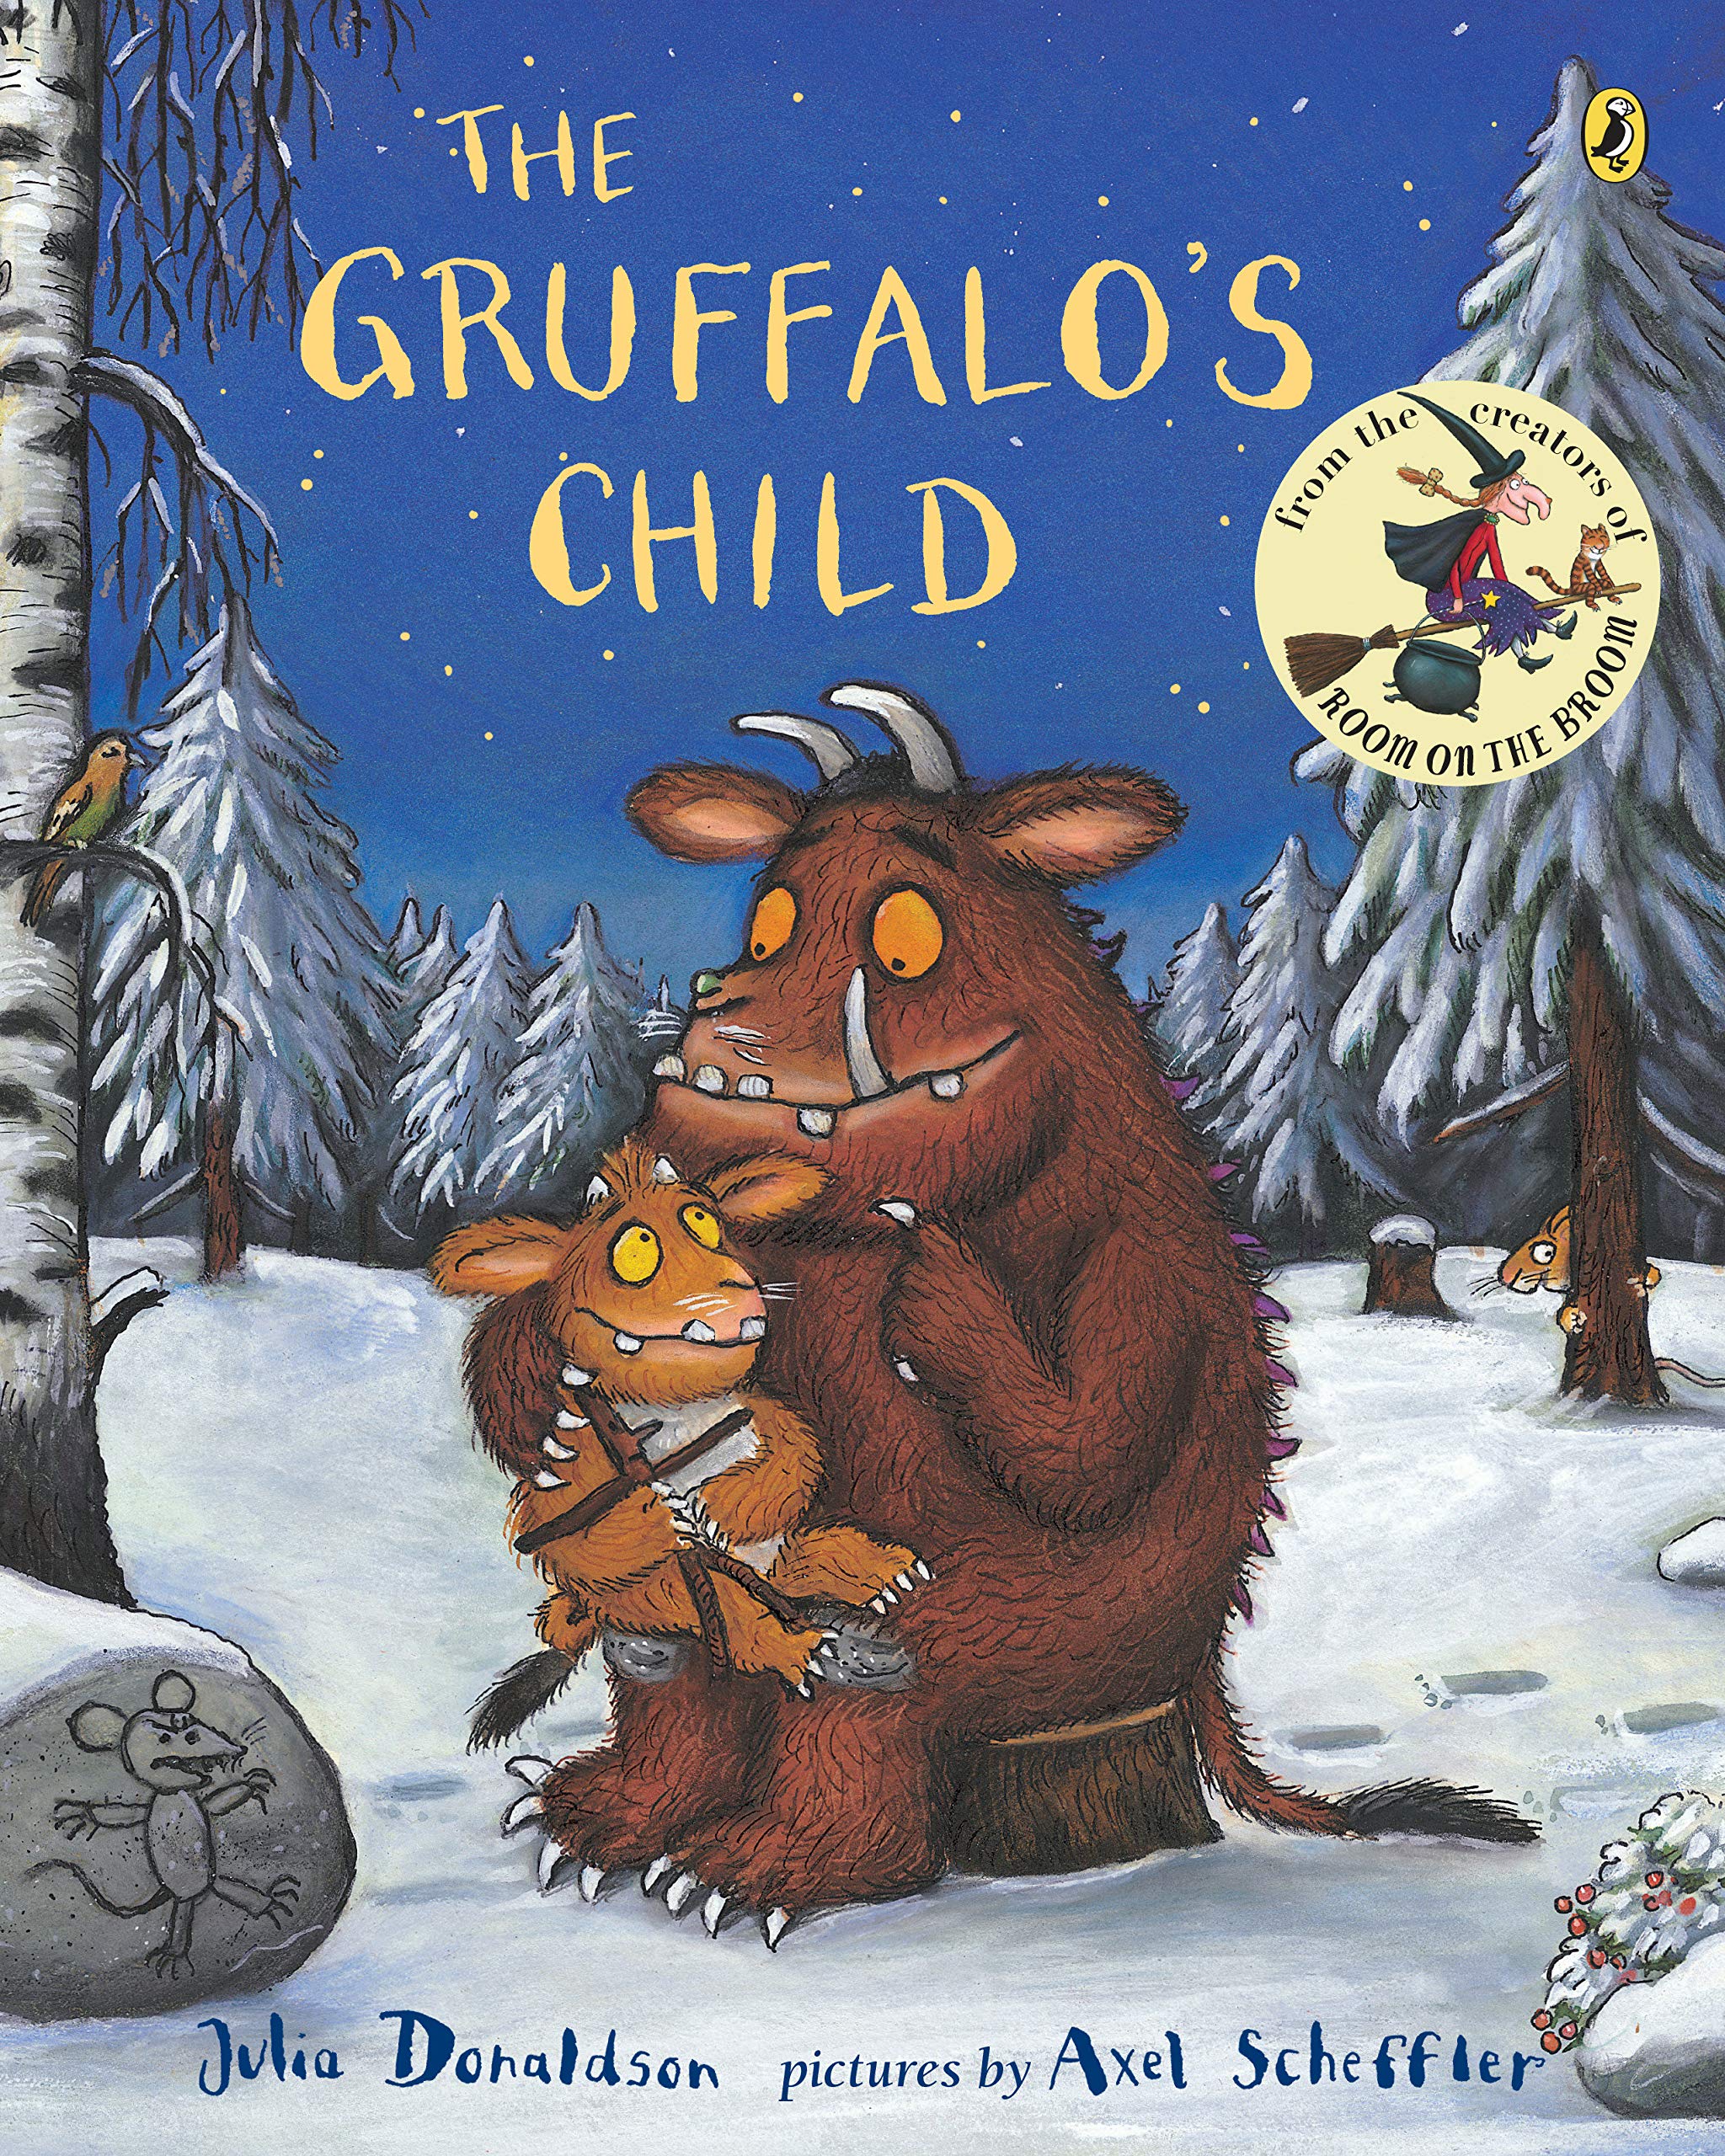 IMG : The Gruffalo's Child